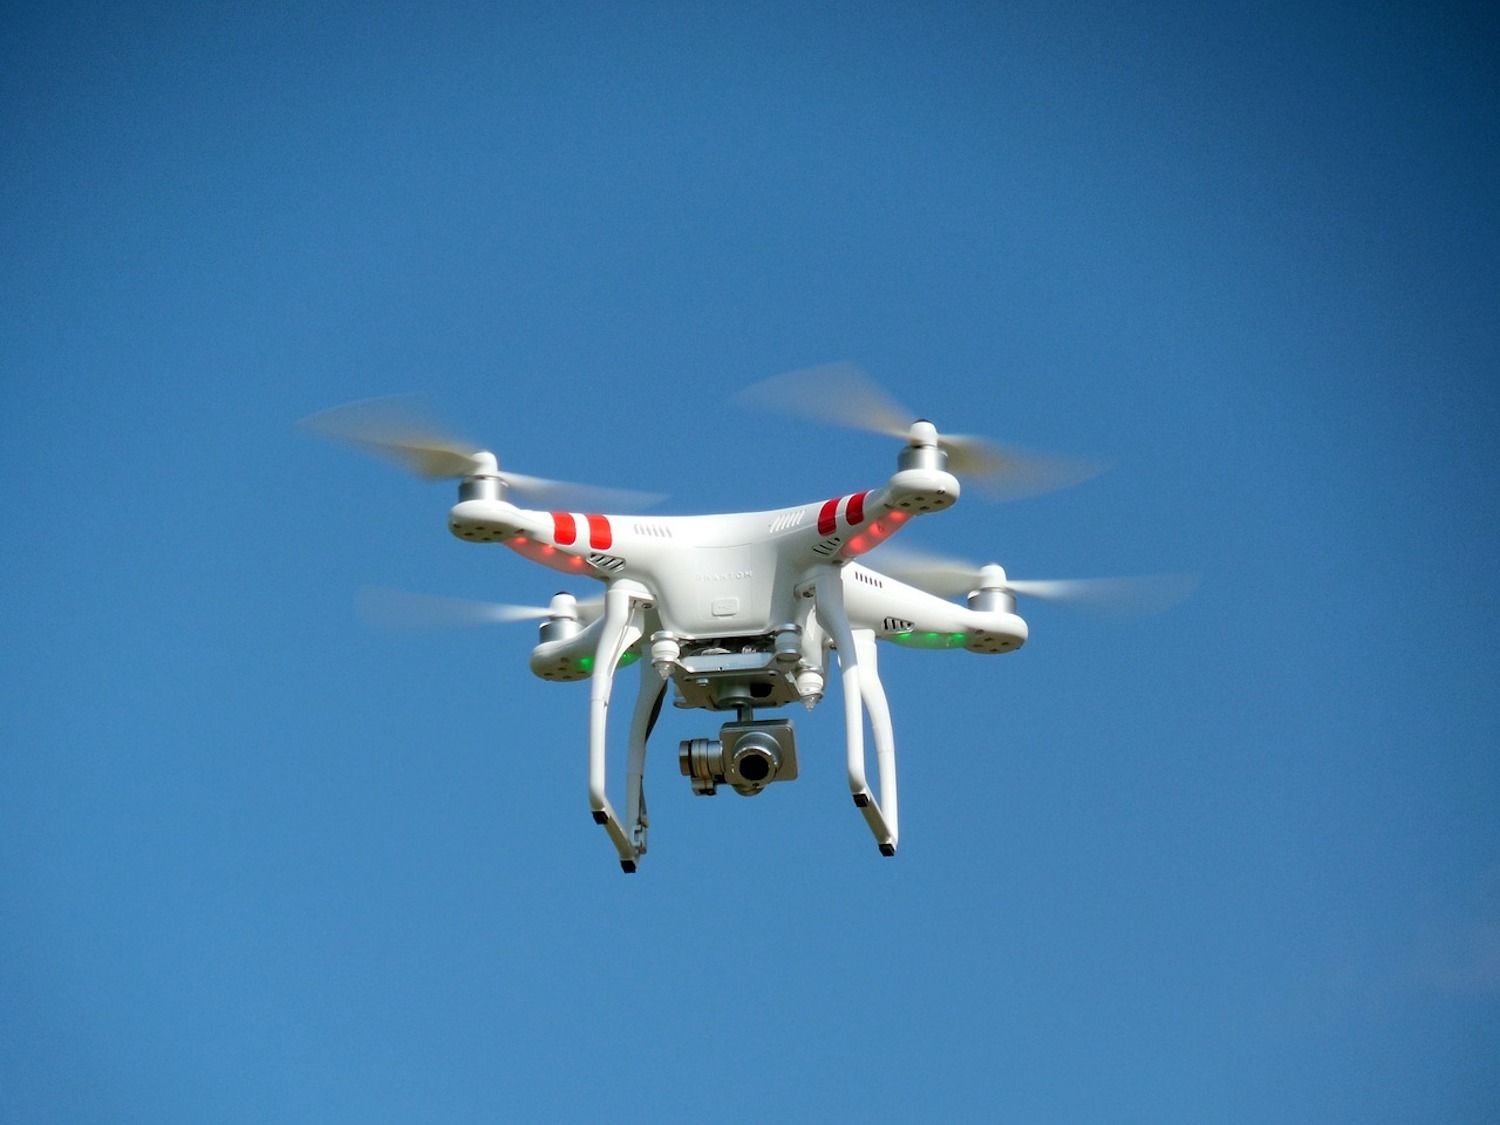 Le spiagge di Barcellona saranno monitorate da Urbana con i droni